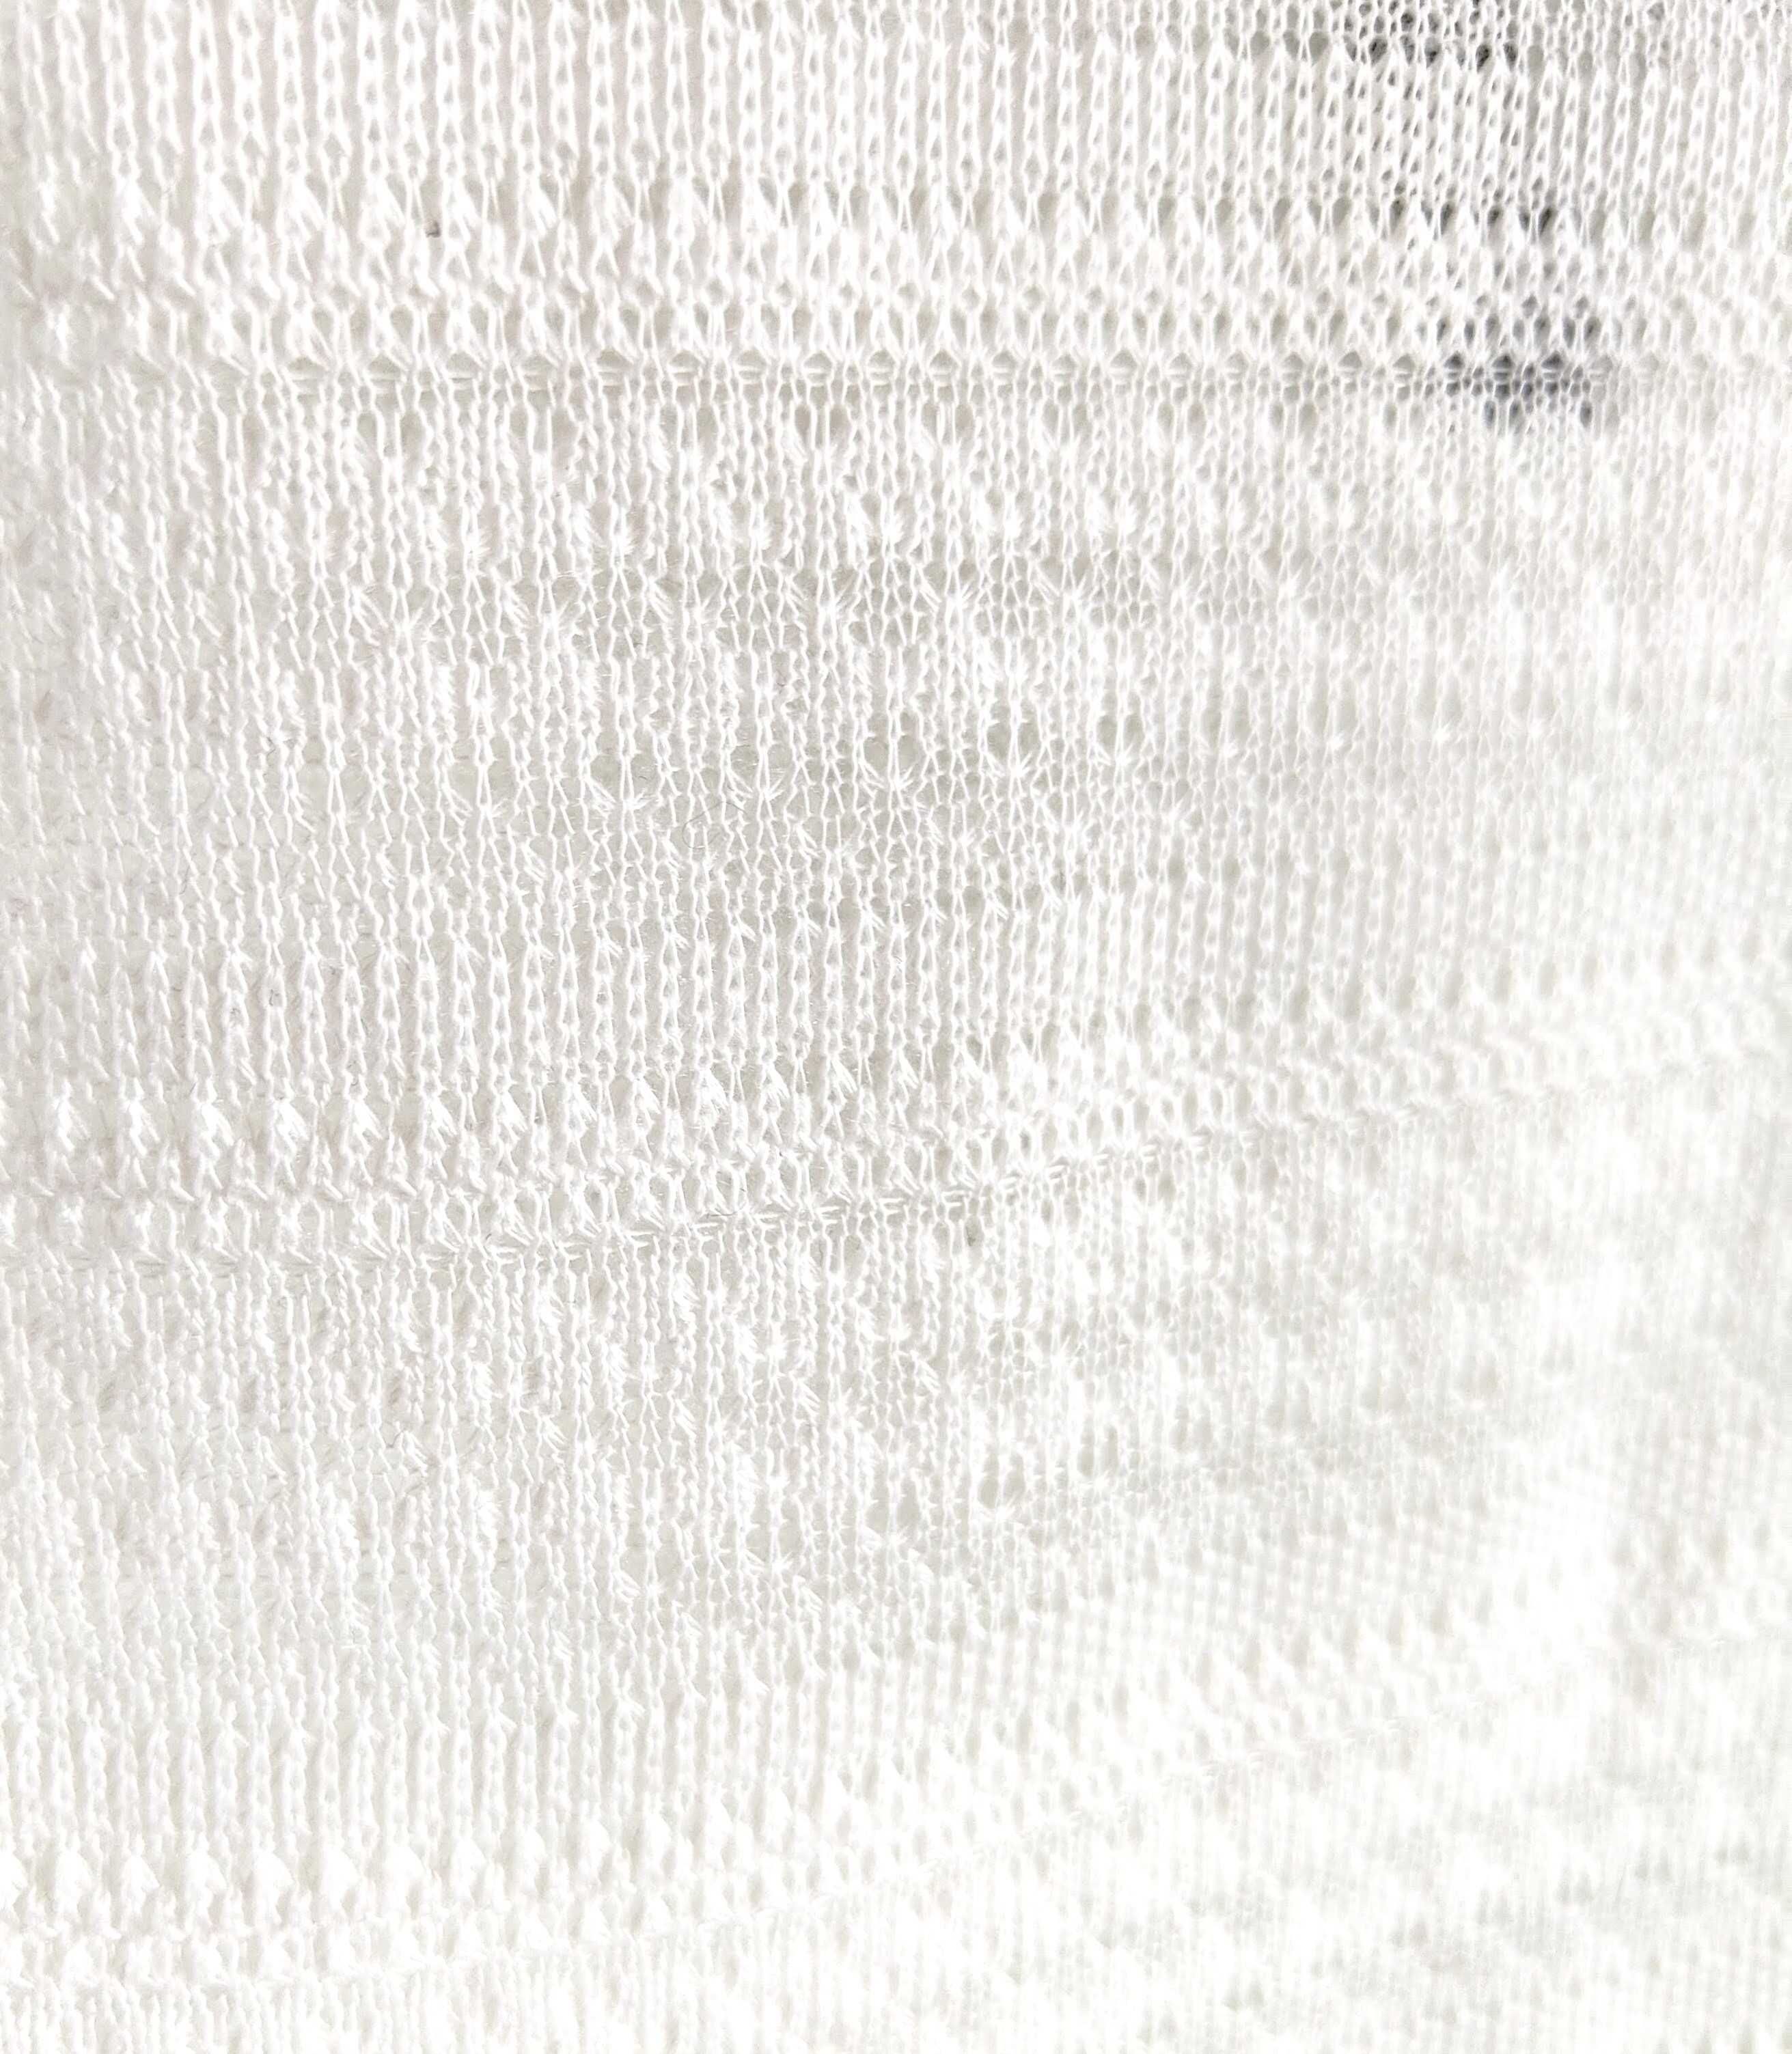 Krótka bluzka crop top H&M XS 34 S 36 biała frędzle boho bohemian